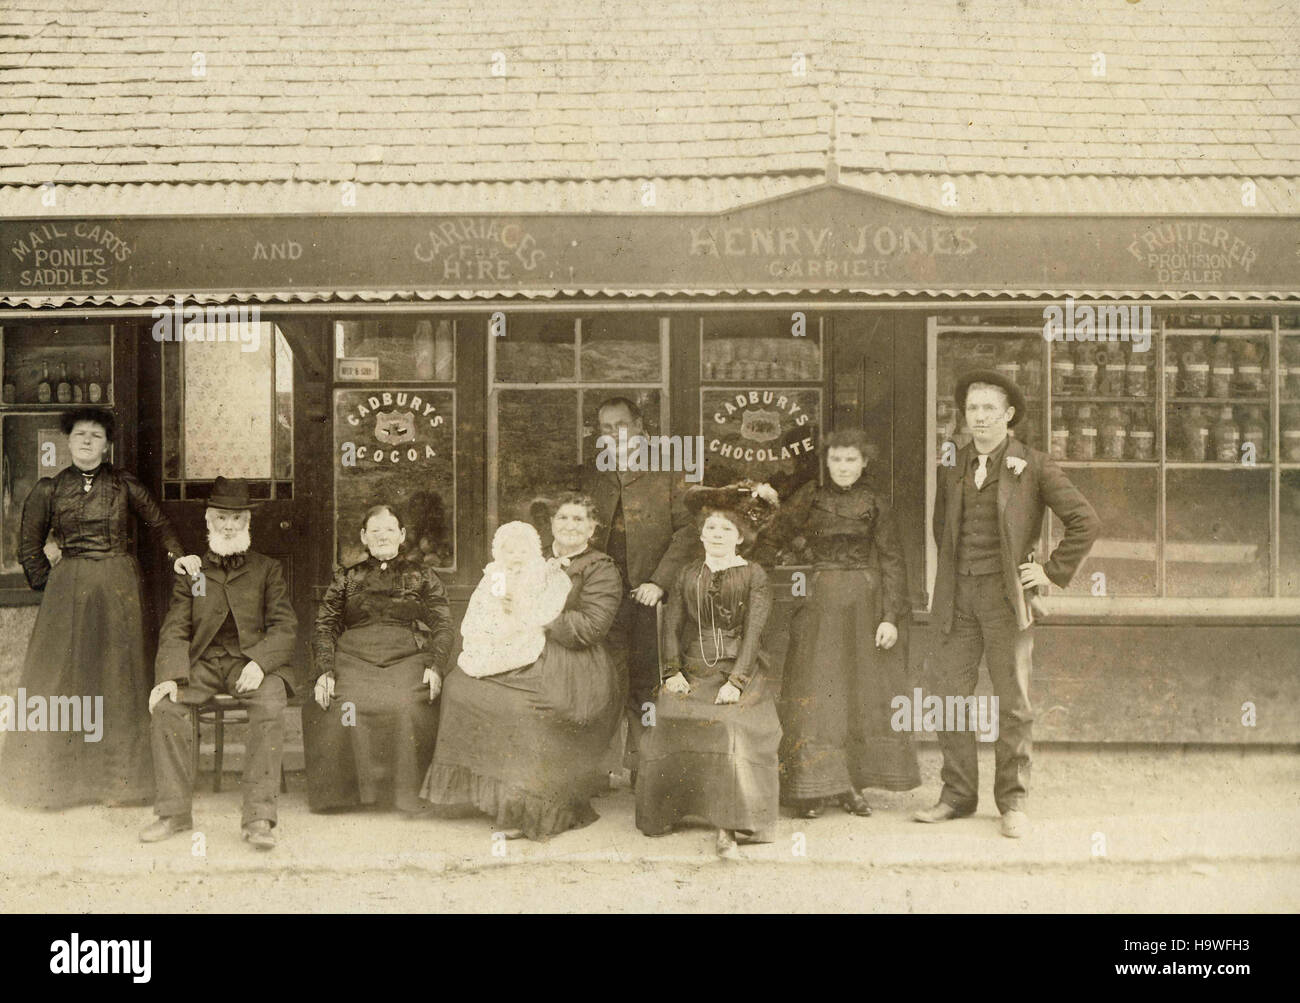 Historisches Archiv-Image der Gruppe außerhalb Shop bei Llanwrst, Nordwales 1900 Stockfoto